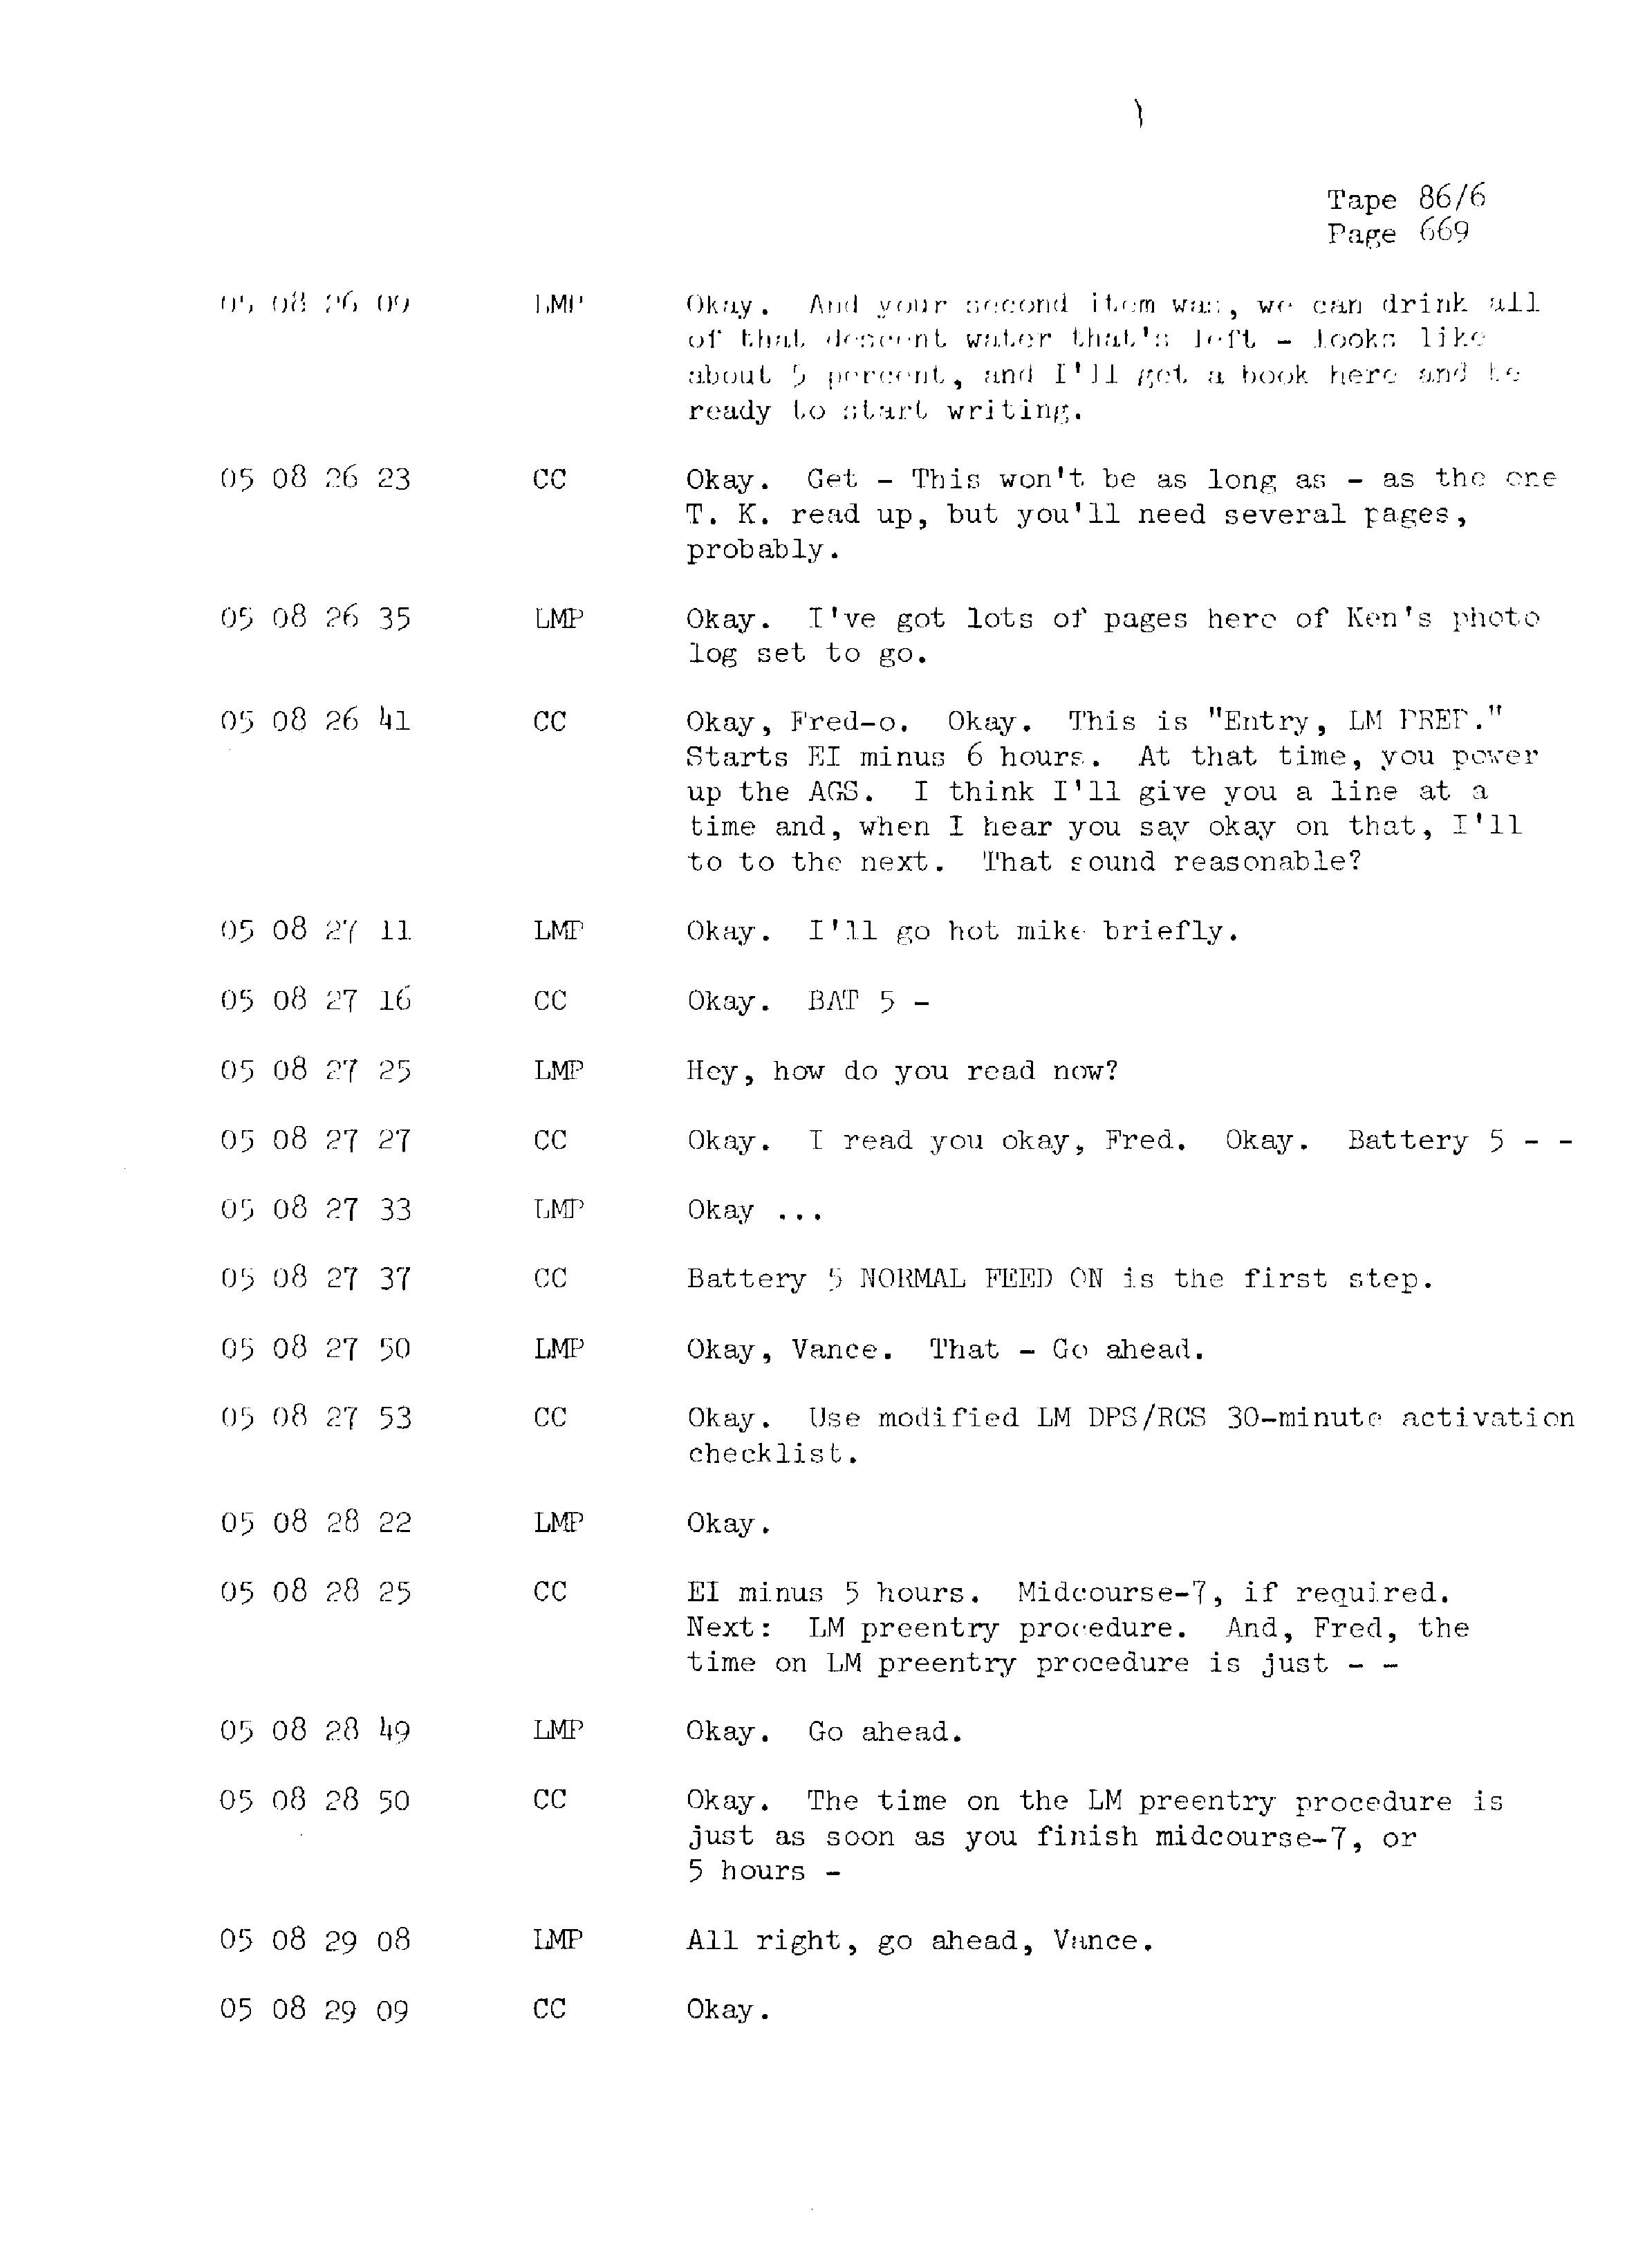 Page 676 of Apollo 13’s original transcript